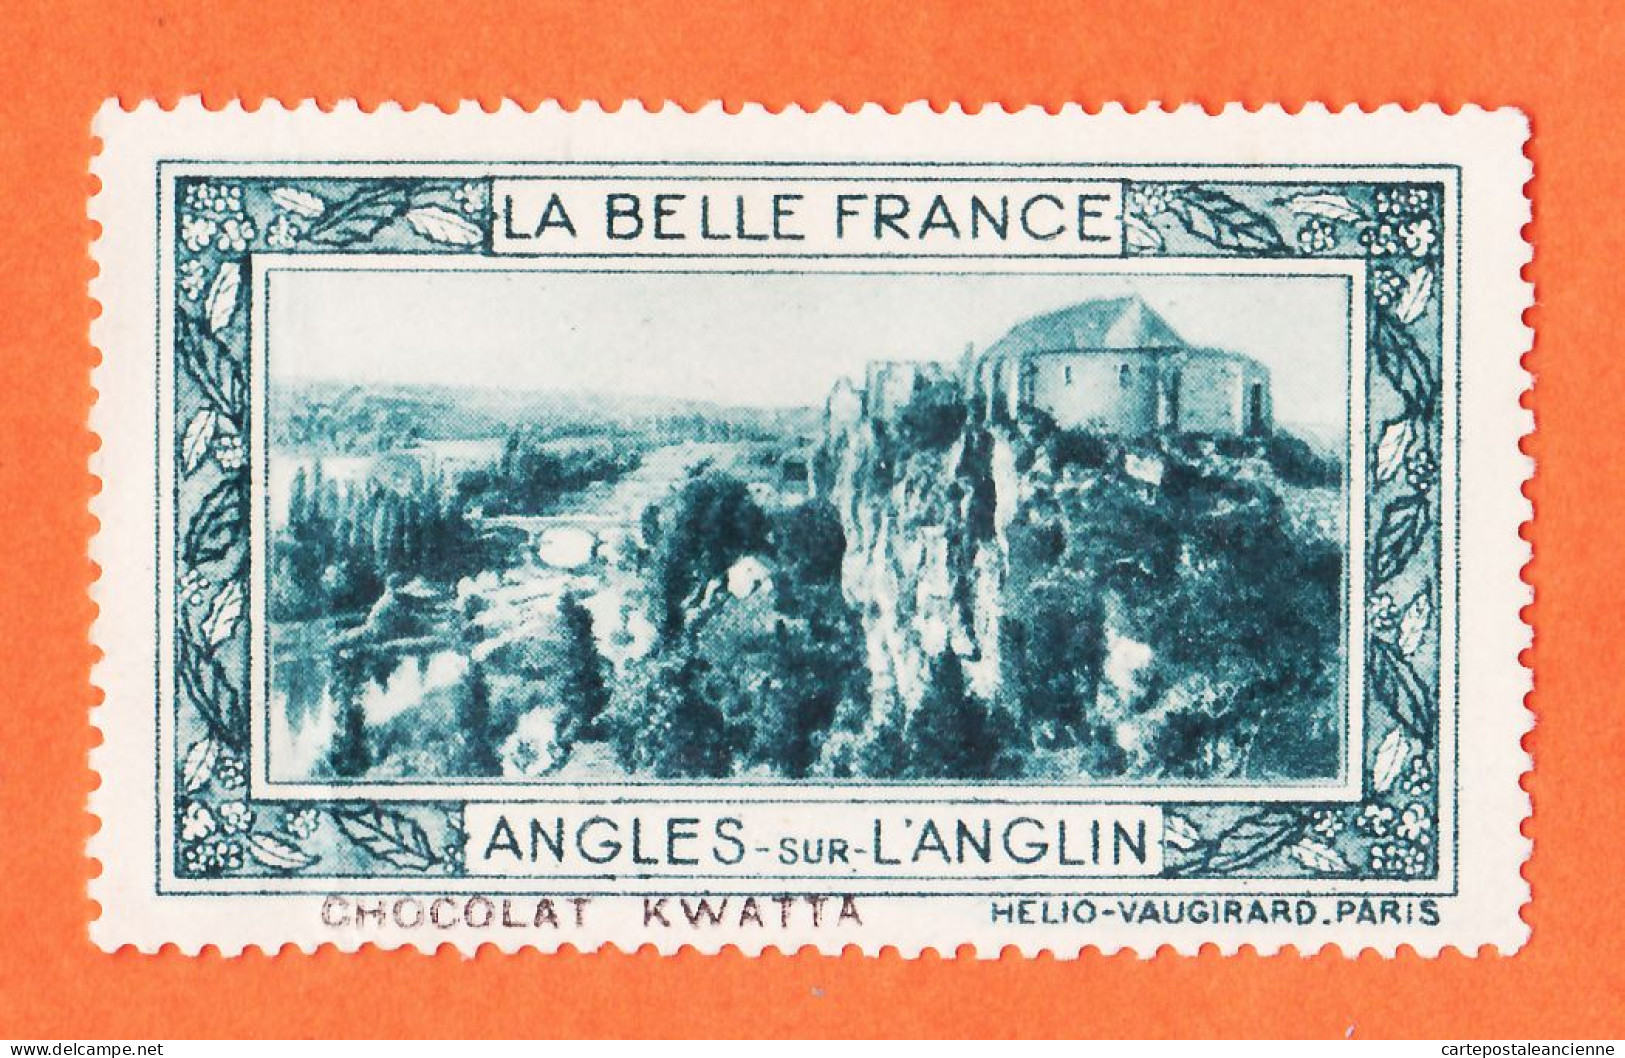 36976 / ⭐ ◉ LANGLES-sur-L'ANGLIN 86-Yonne Pub Chocolat KWATTA Vignette Collection BELLE FRANCE HELIO-VAUGIRARD - Turismo (Viñetas)